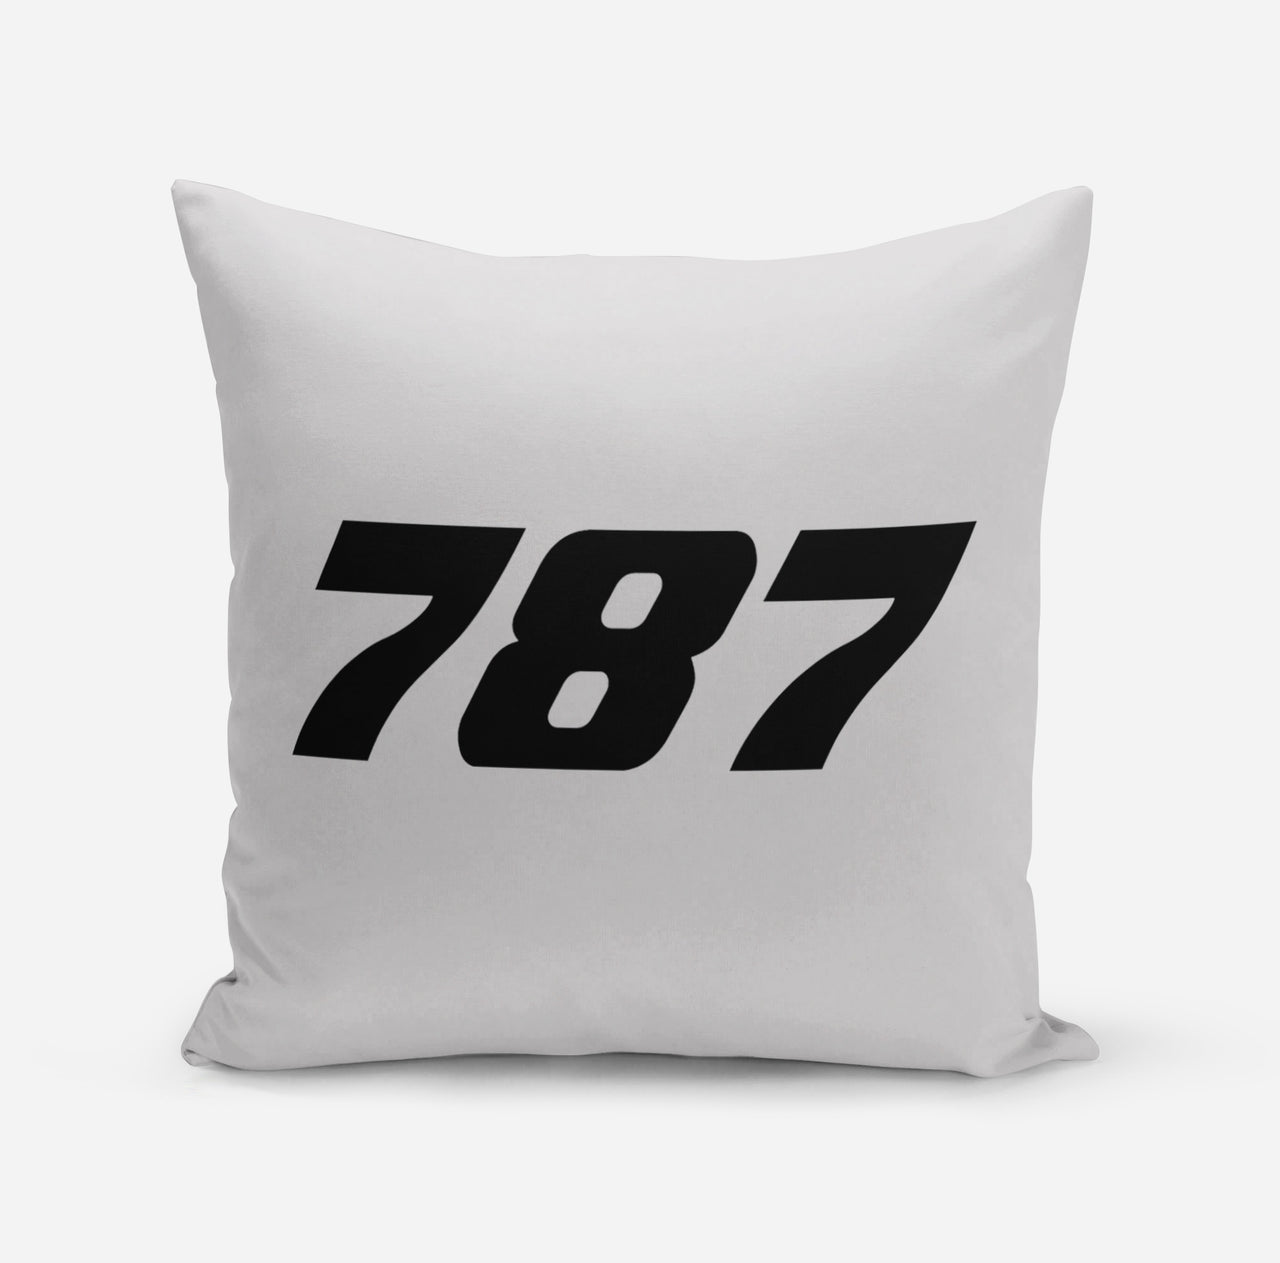 787 Flat Text Designed Pillows